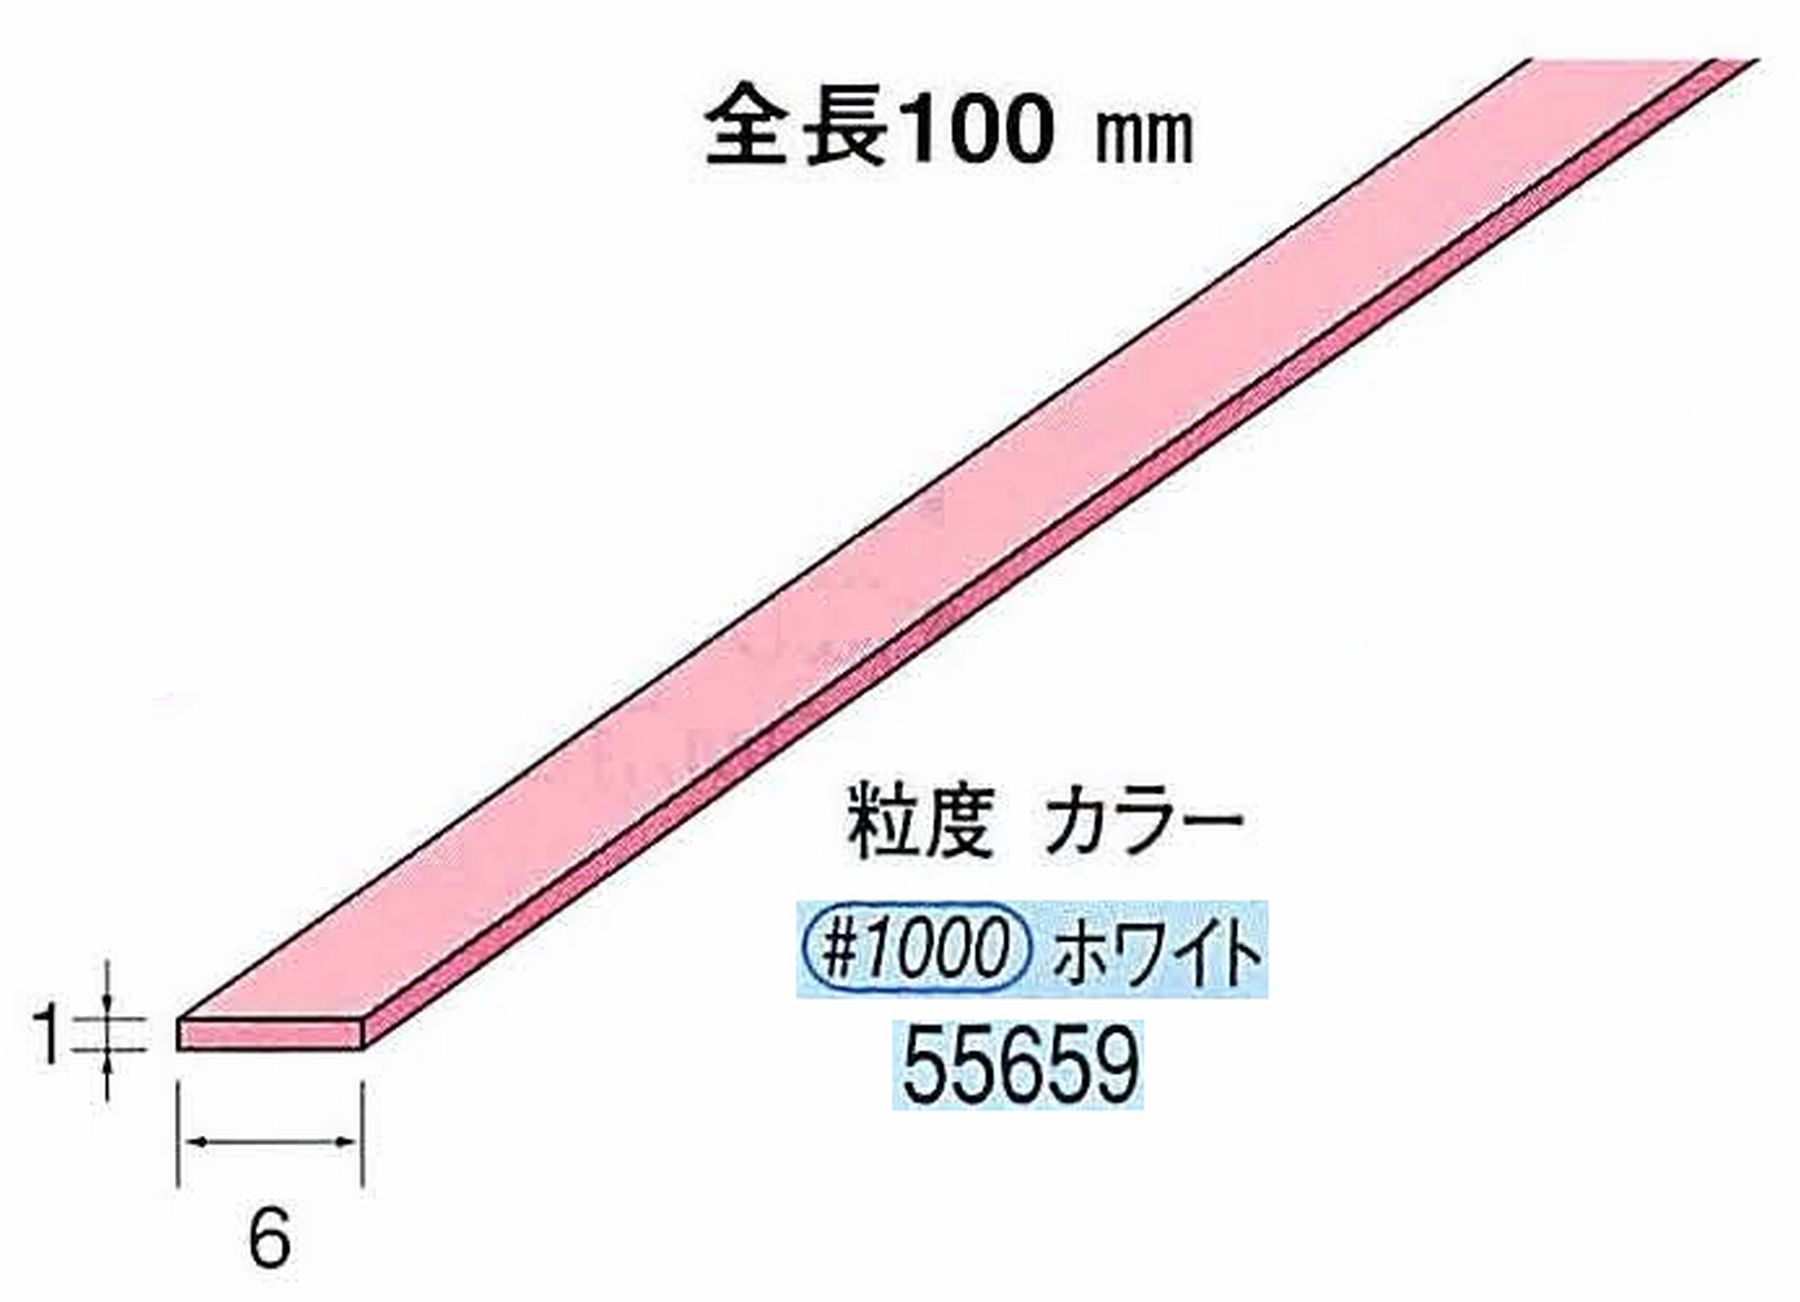 ナカニシ/NAKANISHI セラファイバー砥石 全長100mm ホワイト 55659